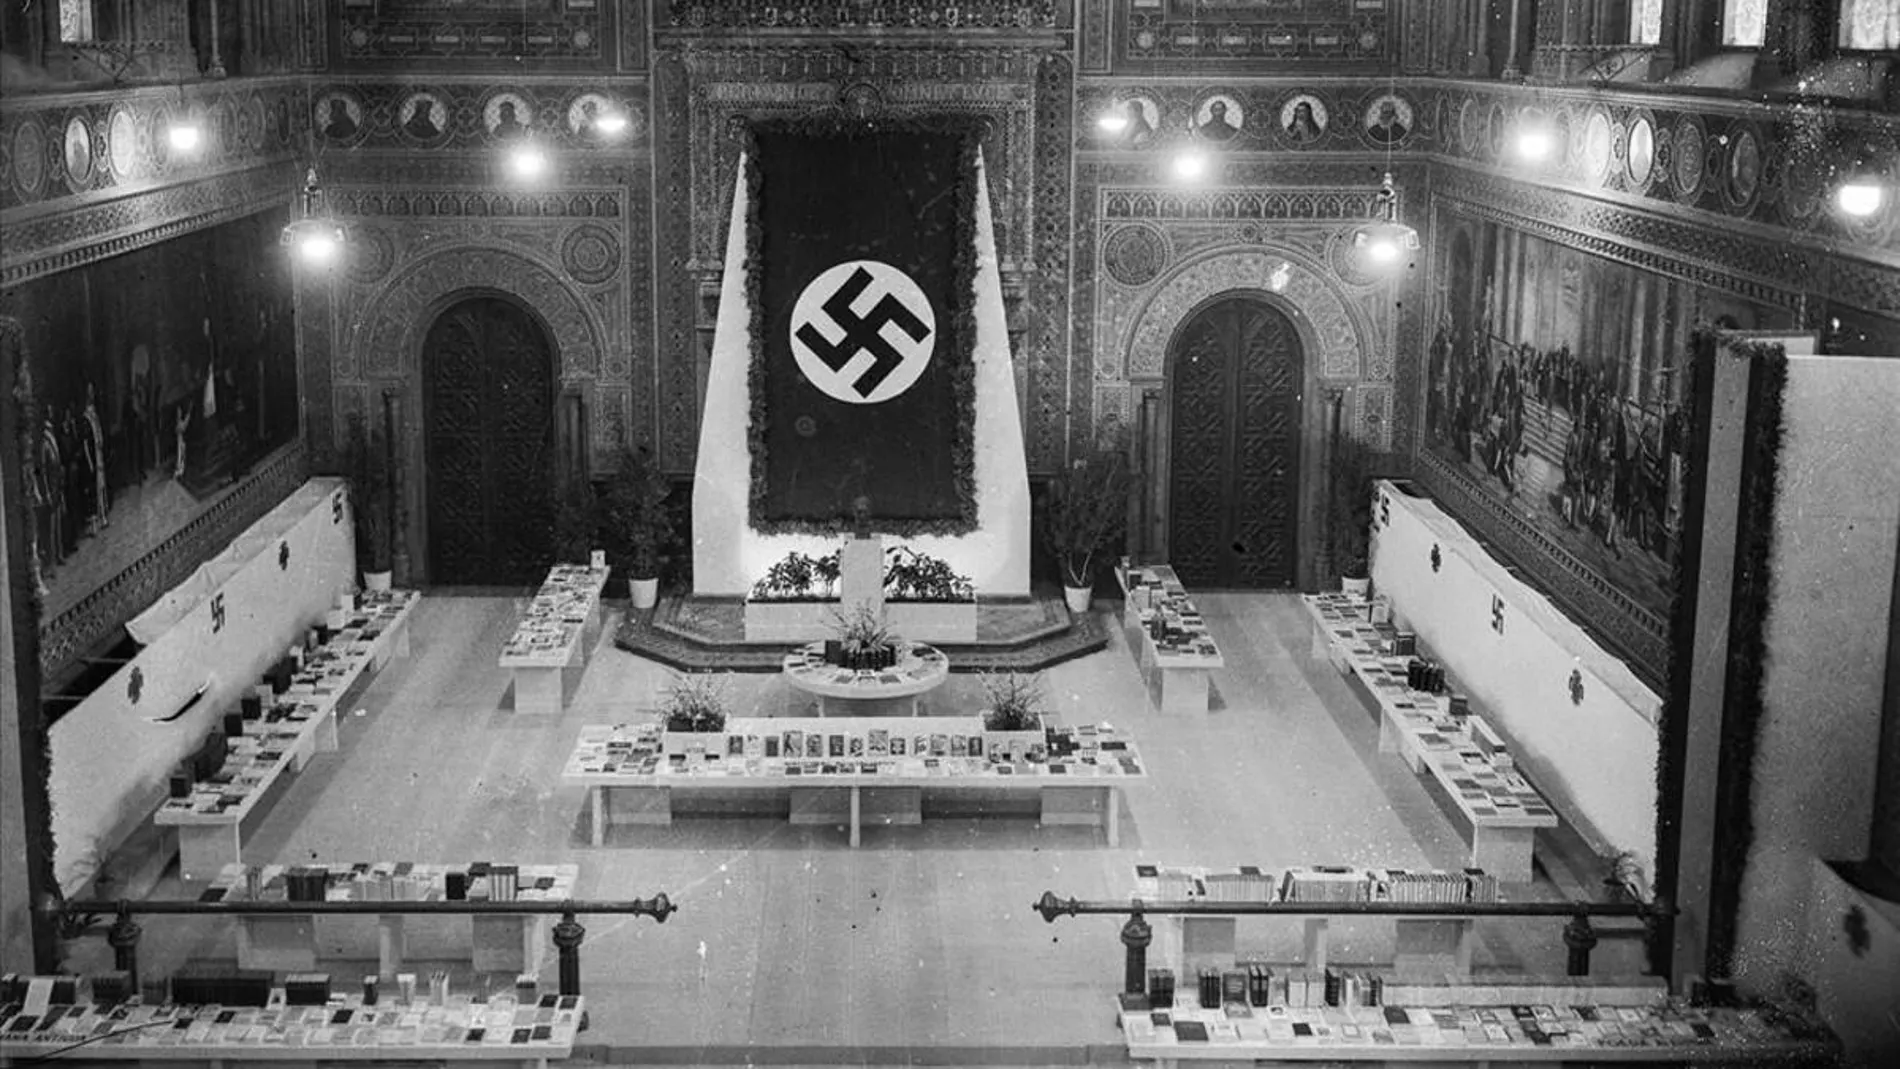 Imagen de una exposición de literatura nazi en el paraninfo de la Universidad de Barcelona, en los años cuarenta